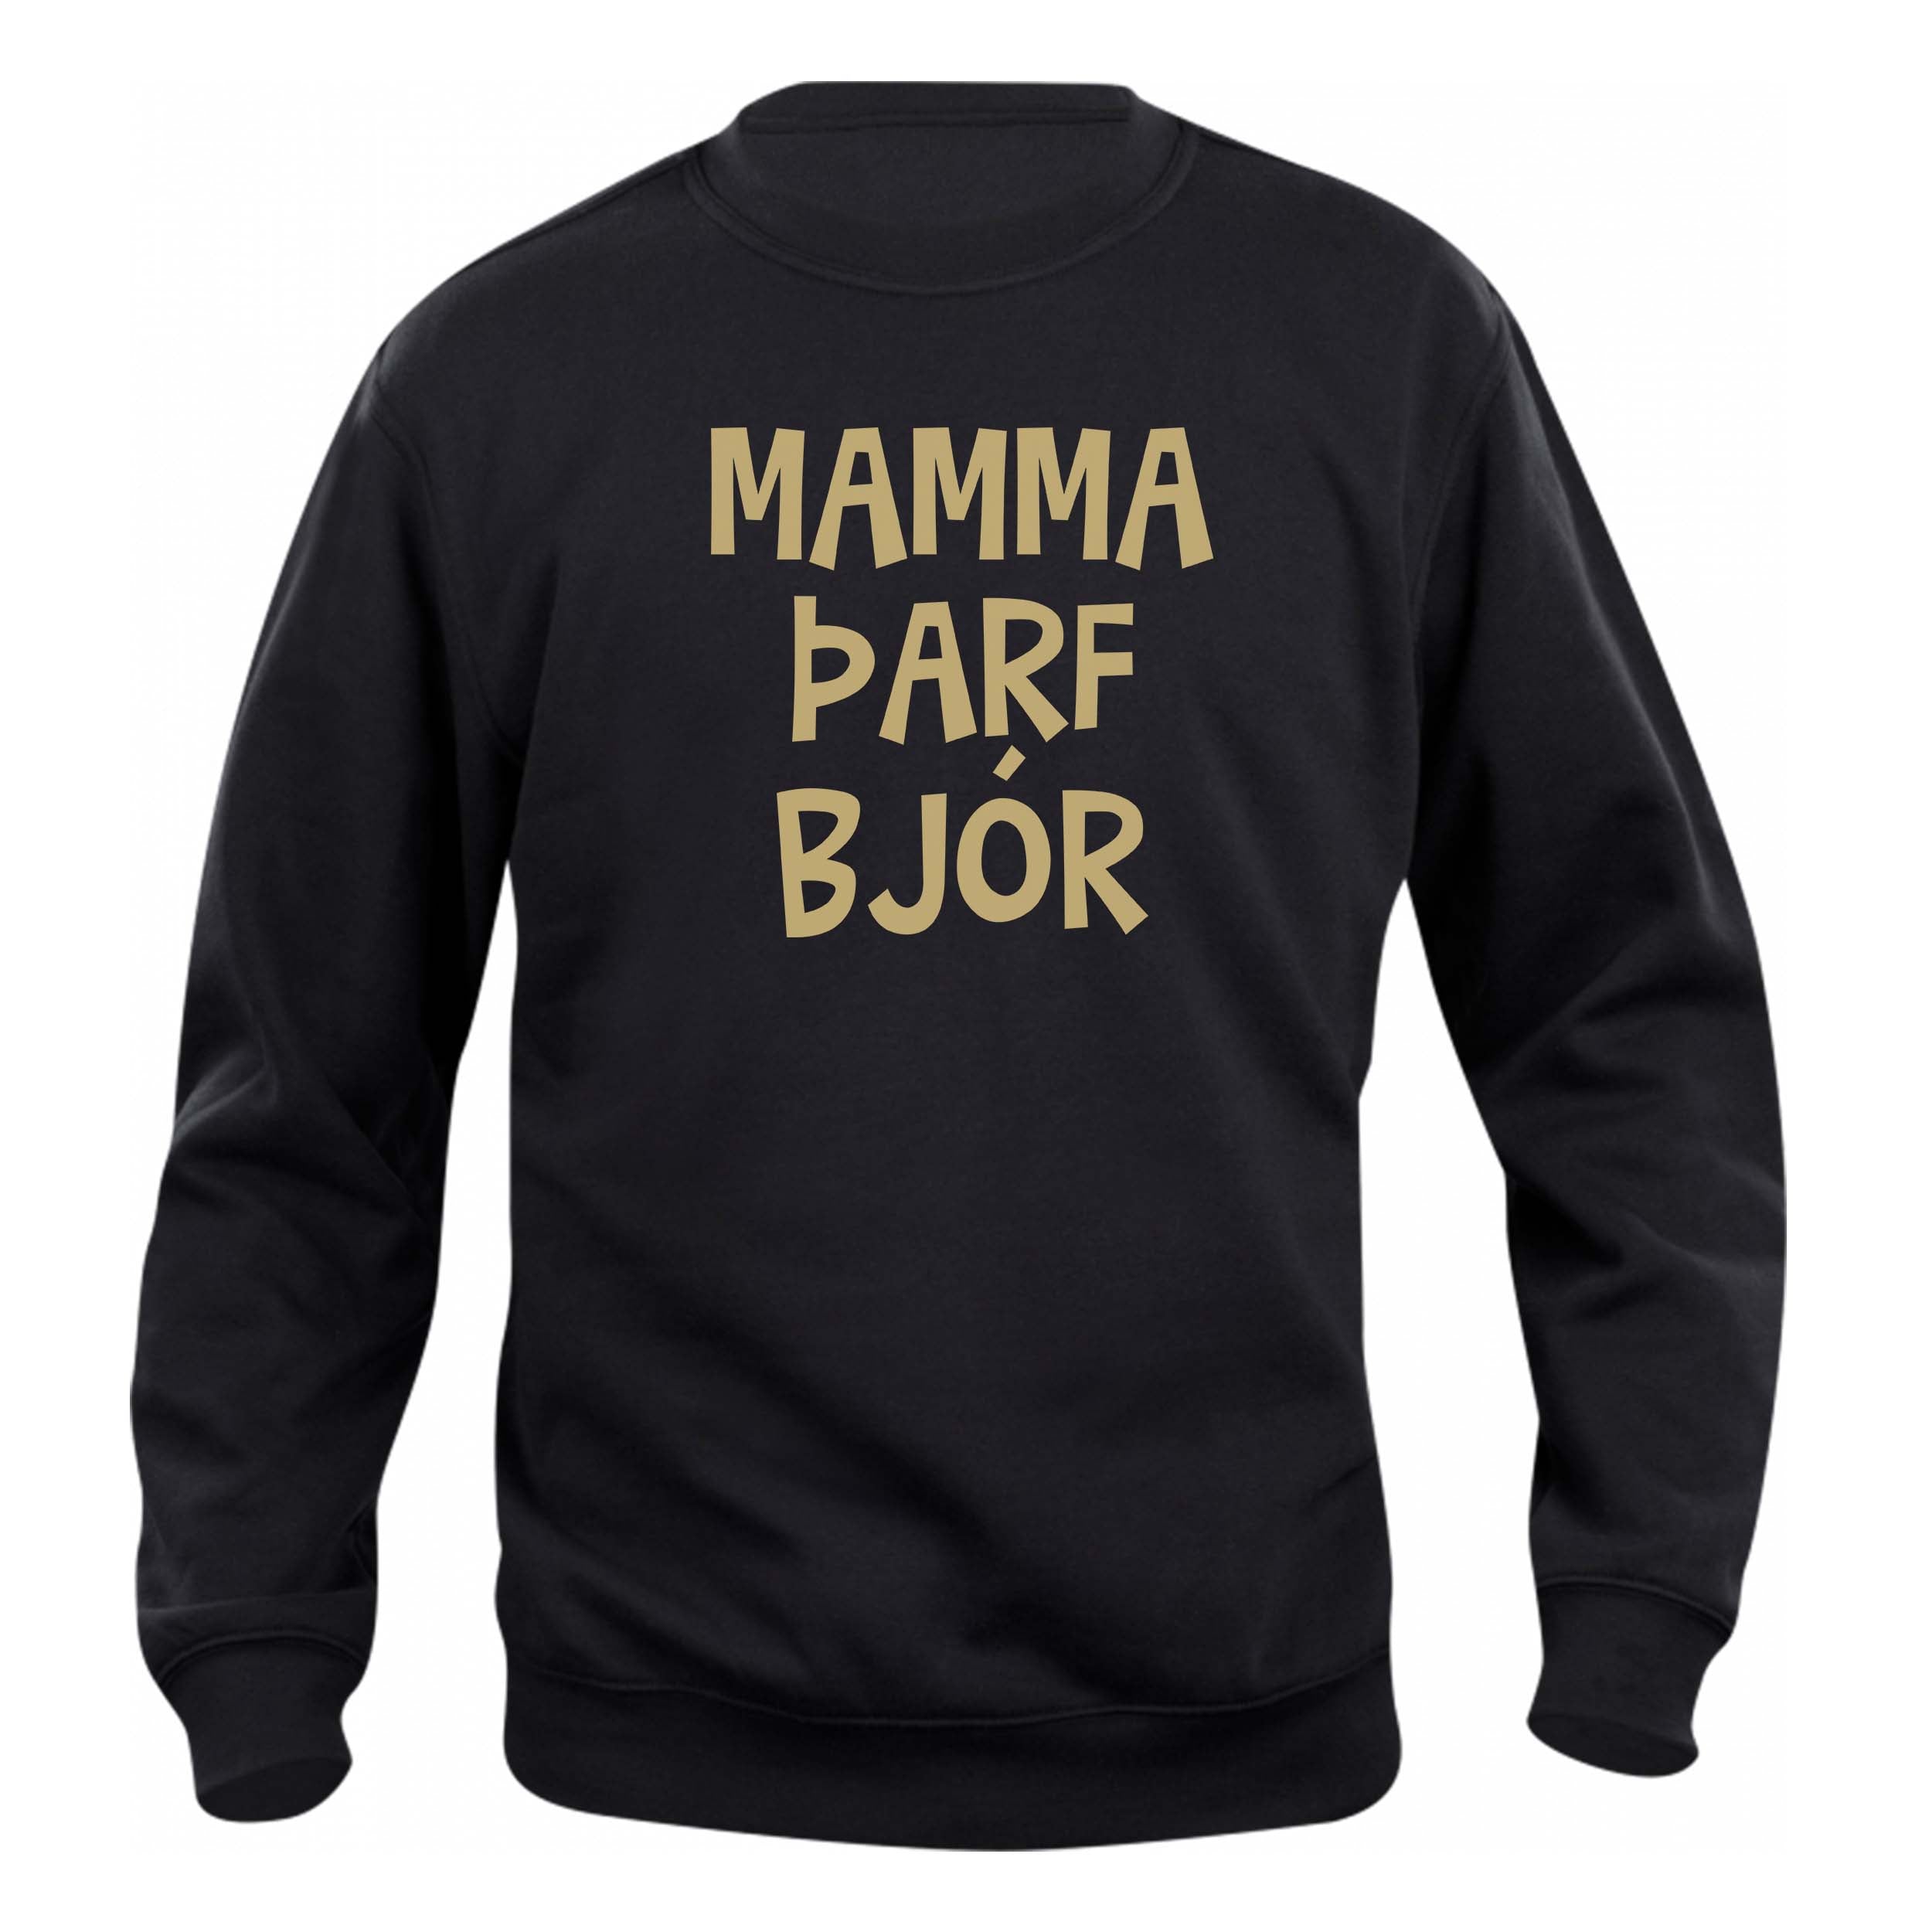 MAMMA ÞARF BJÓR - Peysa - Svört